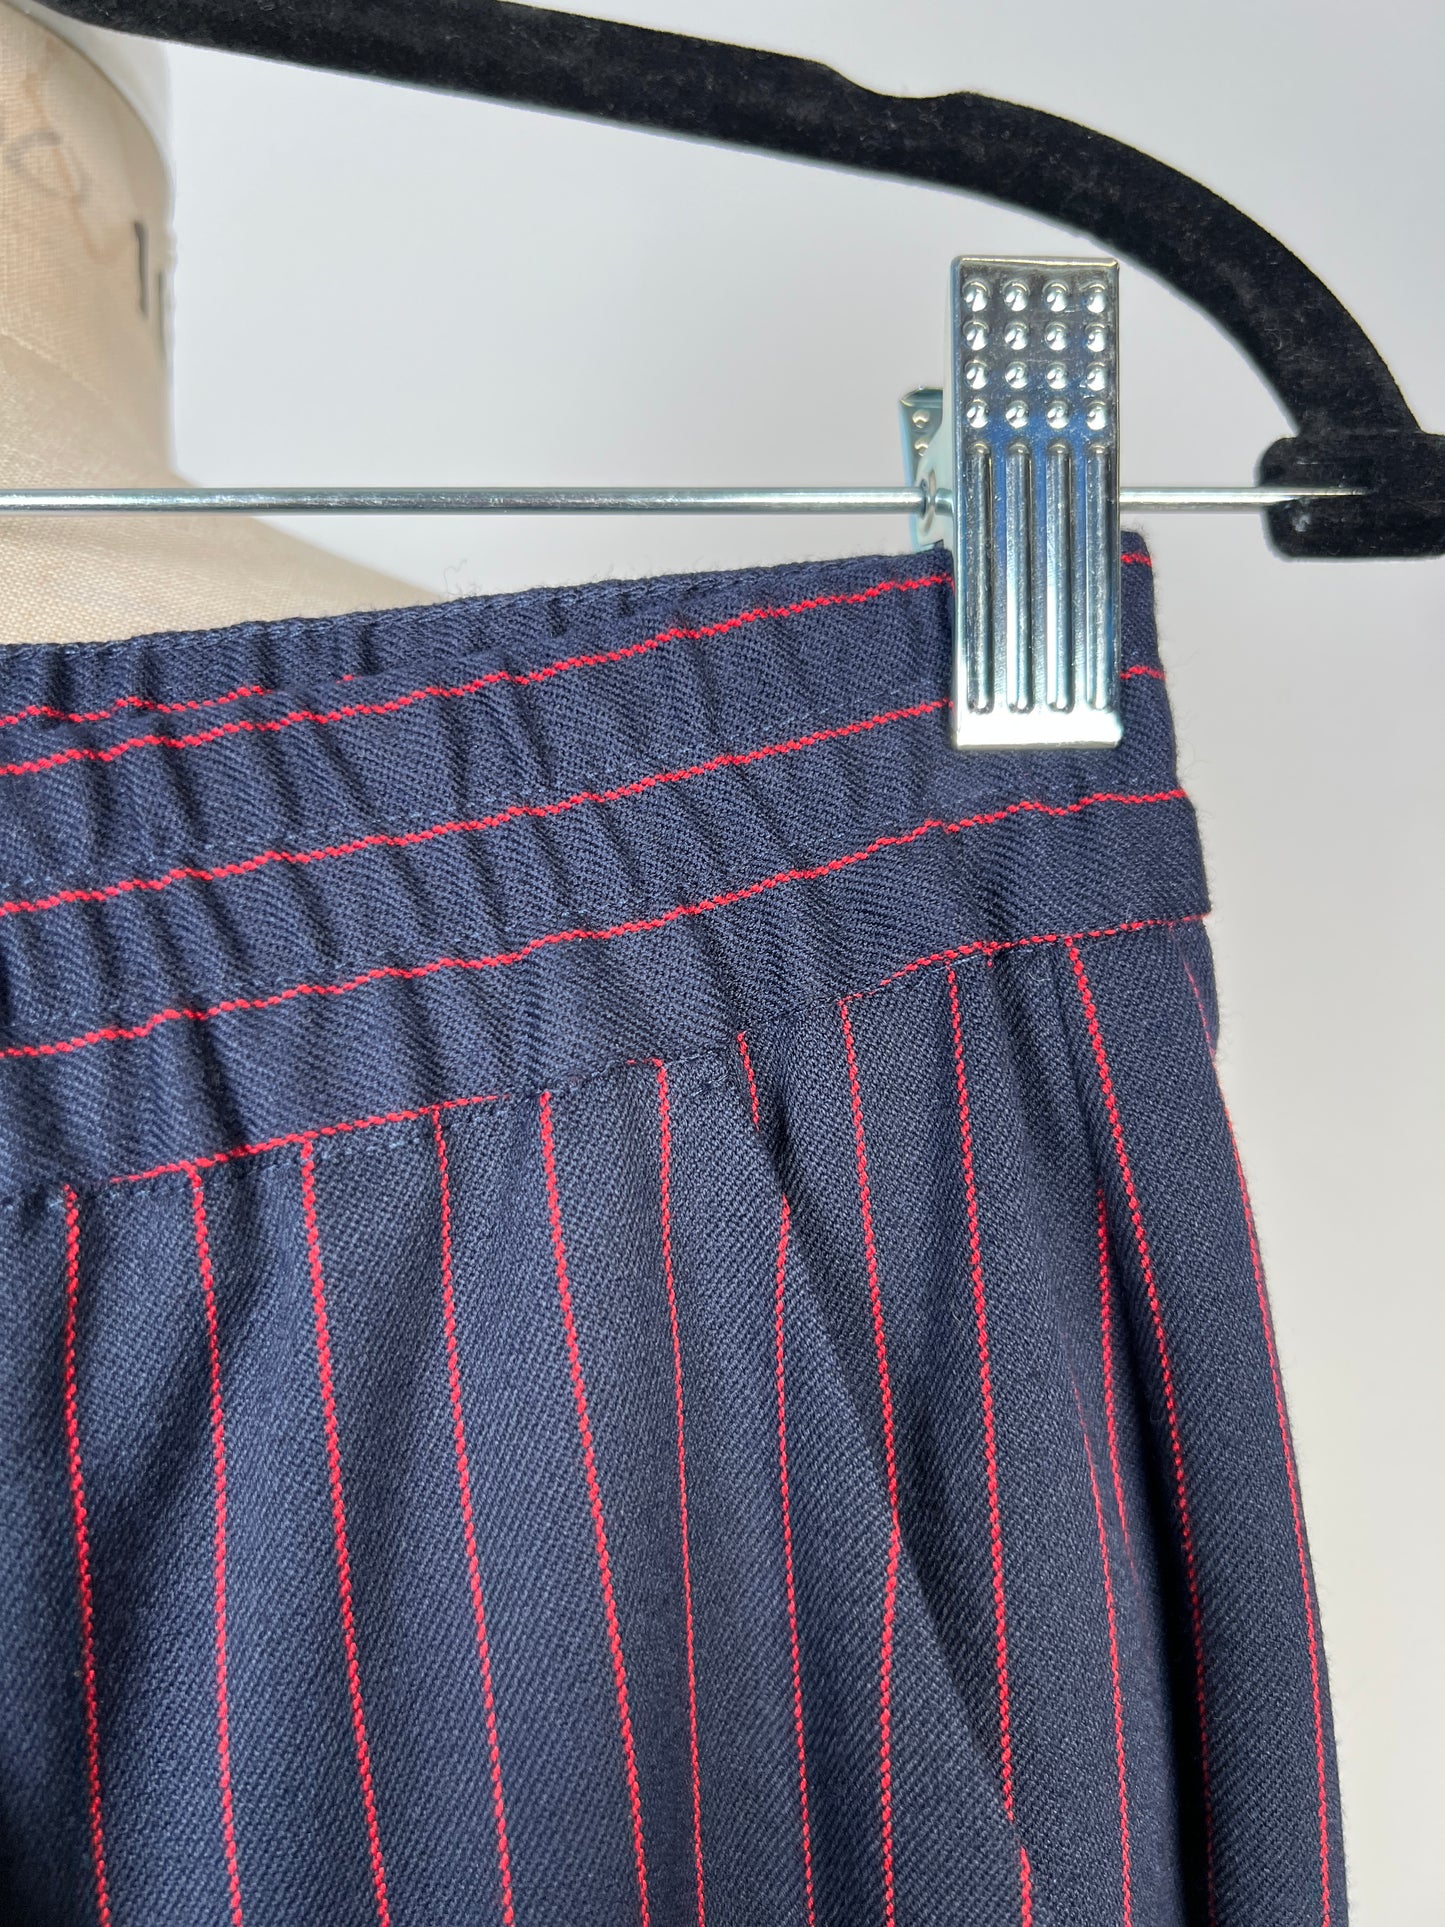 Pantalon marine à fines rayures rouges lavable (6)